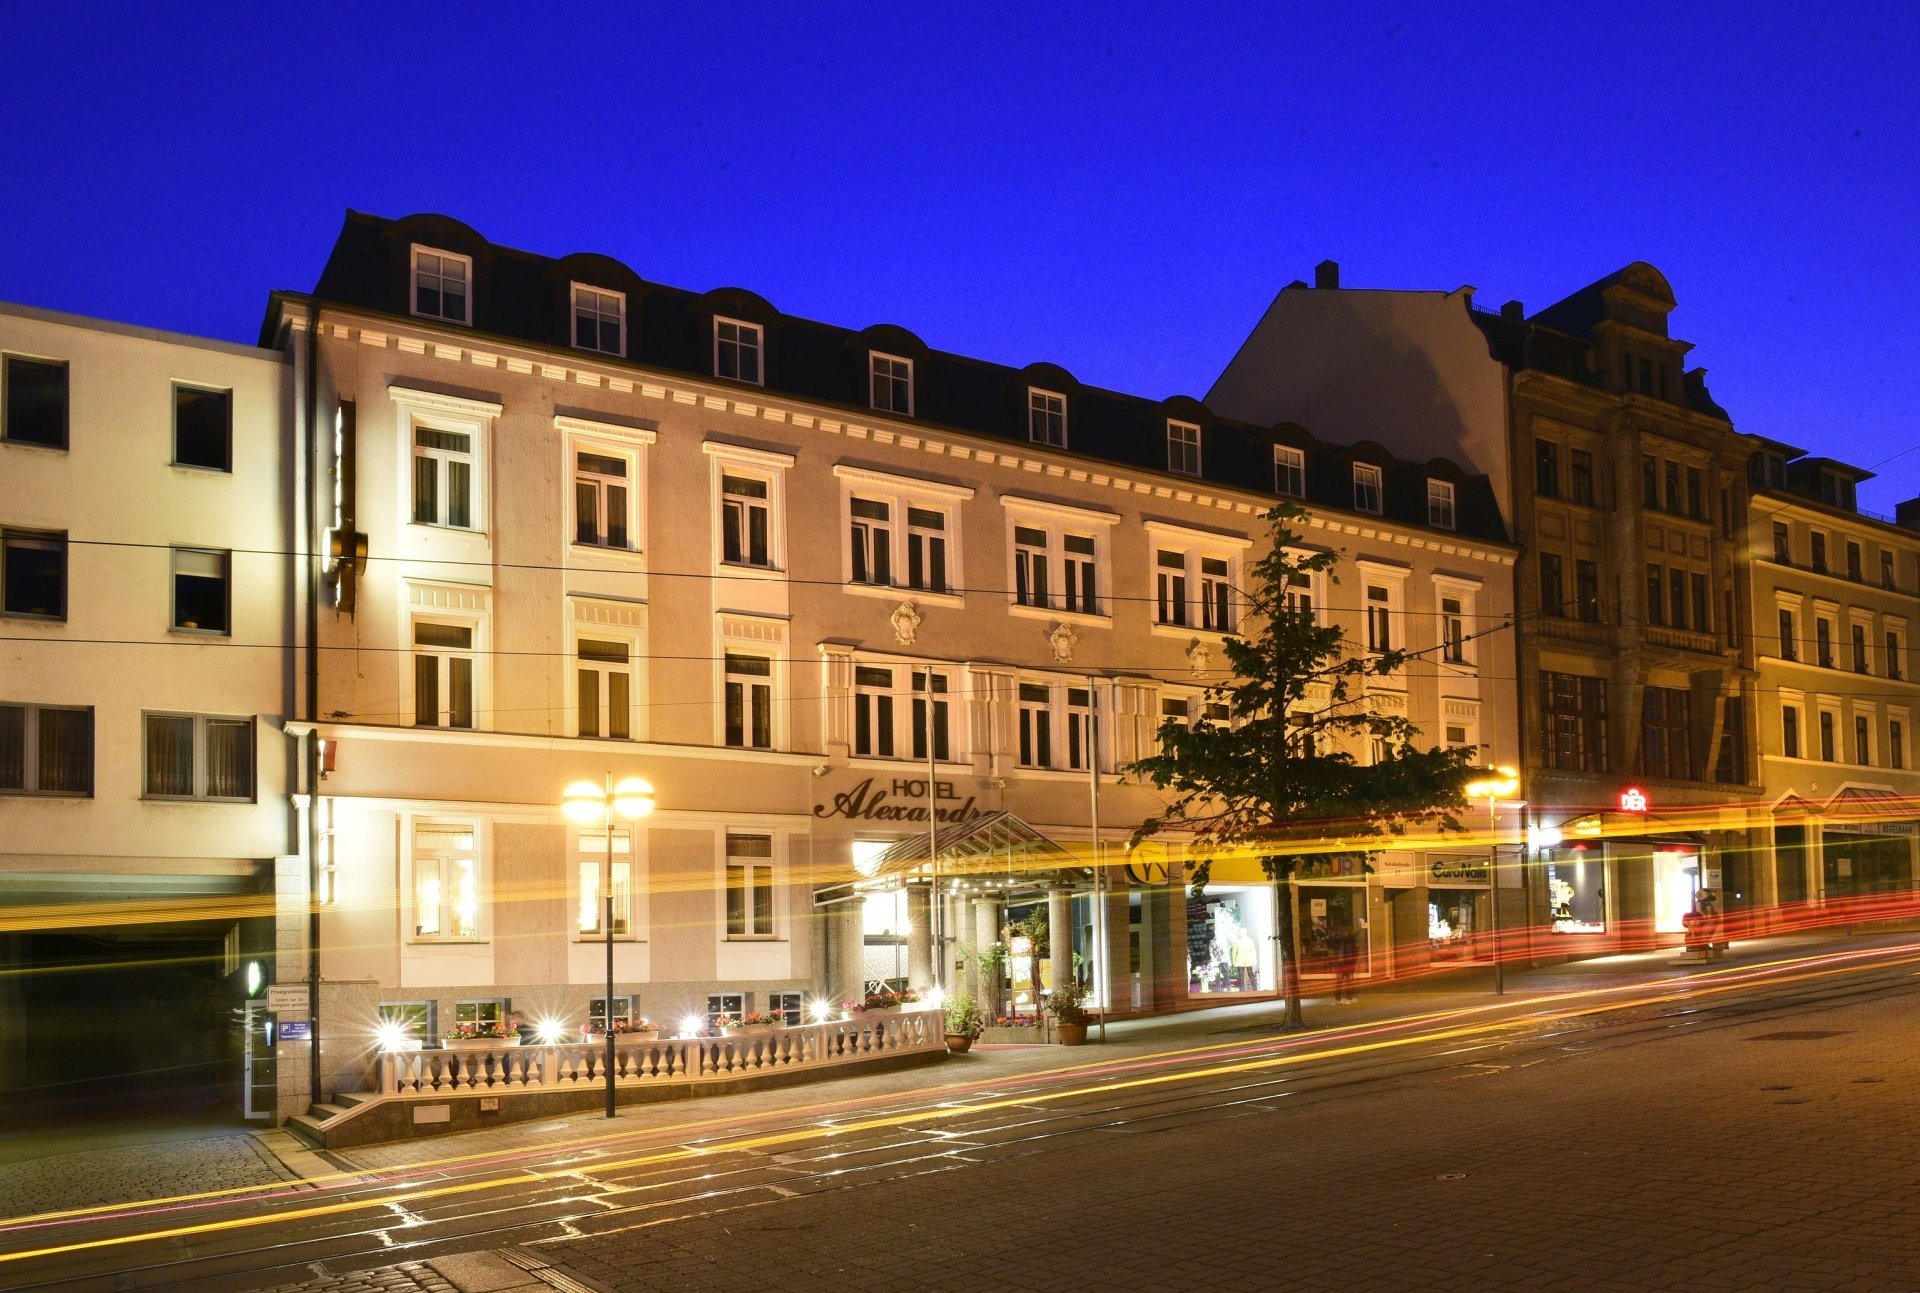 2 Tage Wellromance® – Hotel Alexandra (4 Sterne) in Plauen, Sachsen inkl. Halbpension